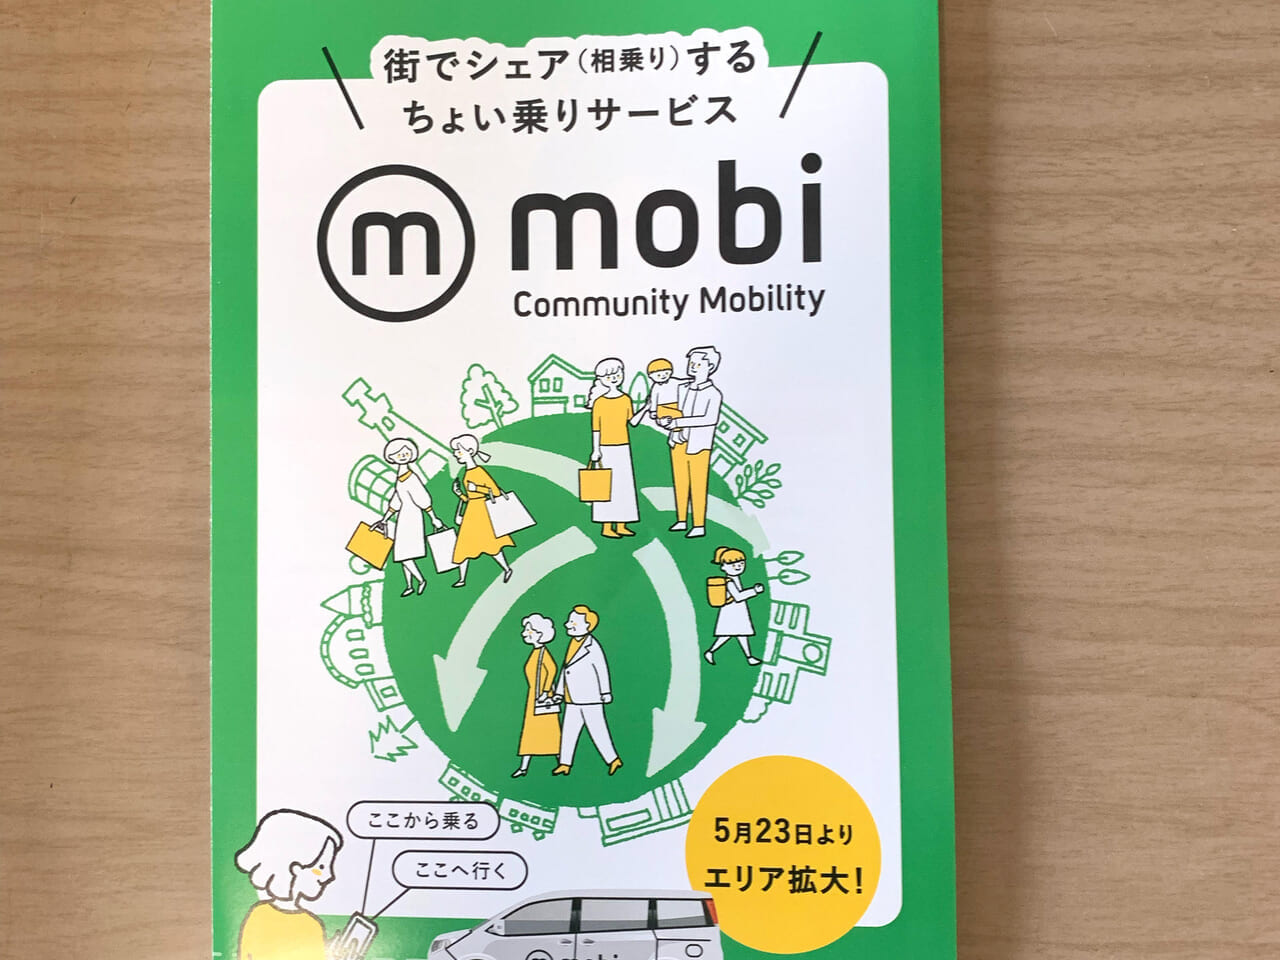 30日間5,000円で決まったエリア内であれば使い放題の相乗りタクシー「mobi」は時代に合った移動方法です!!